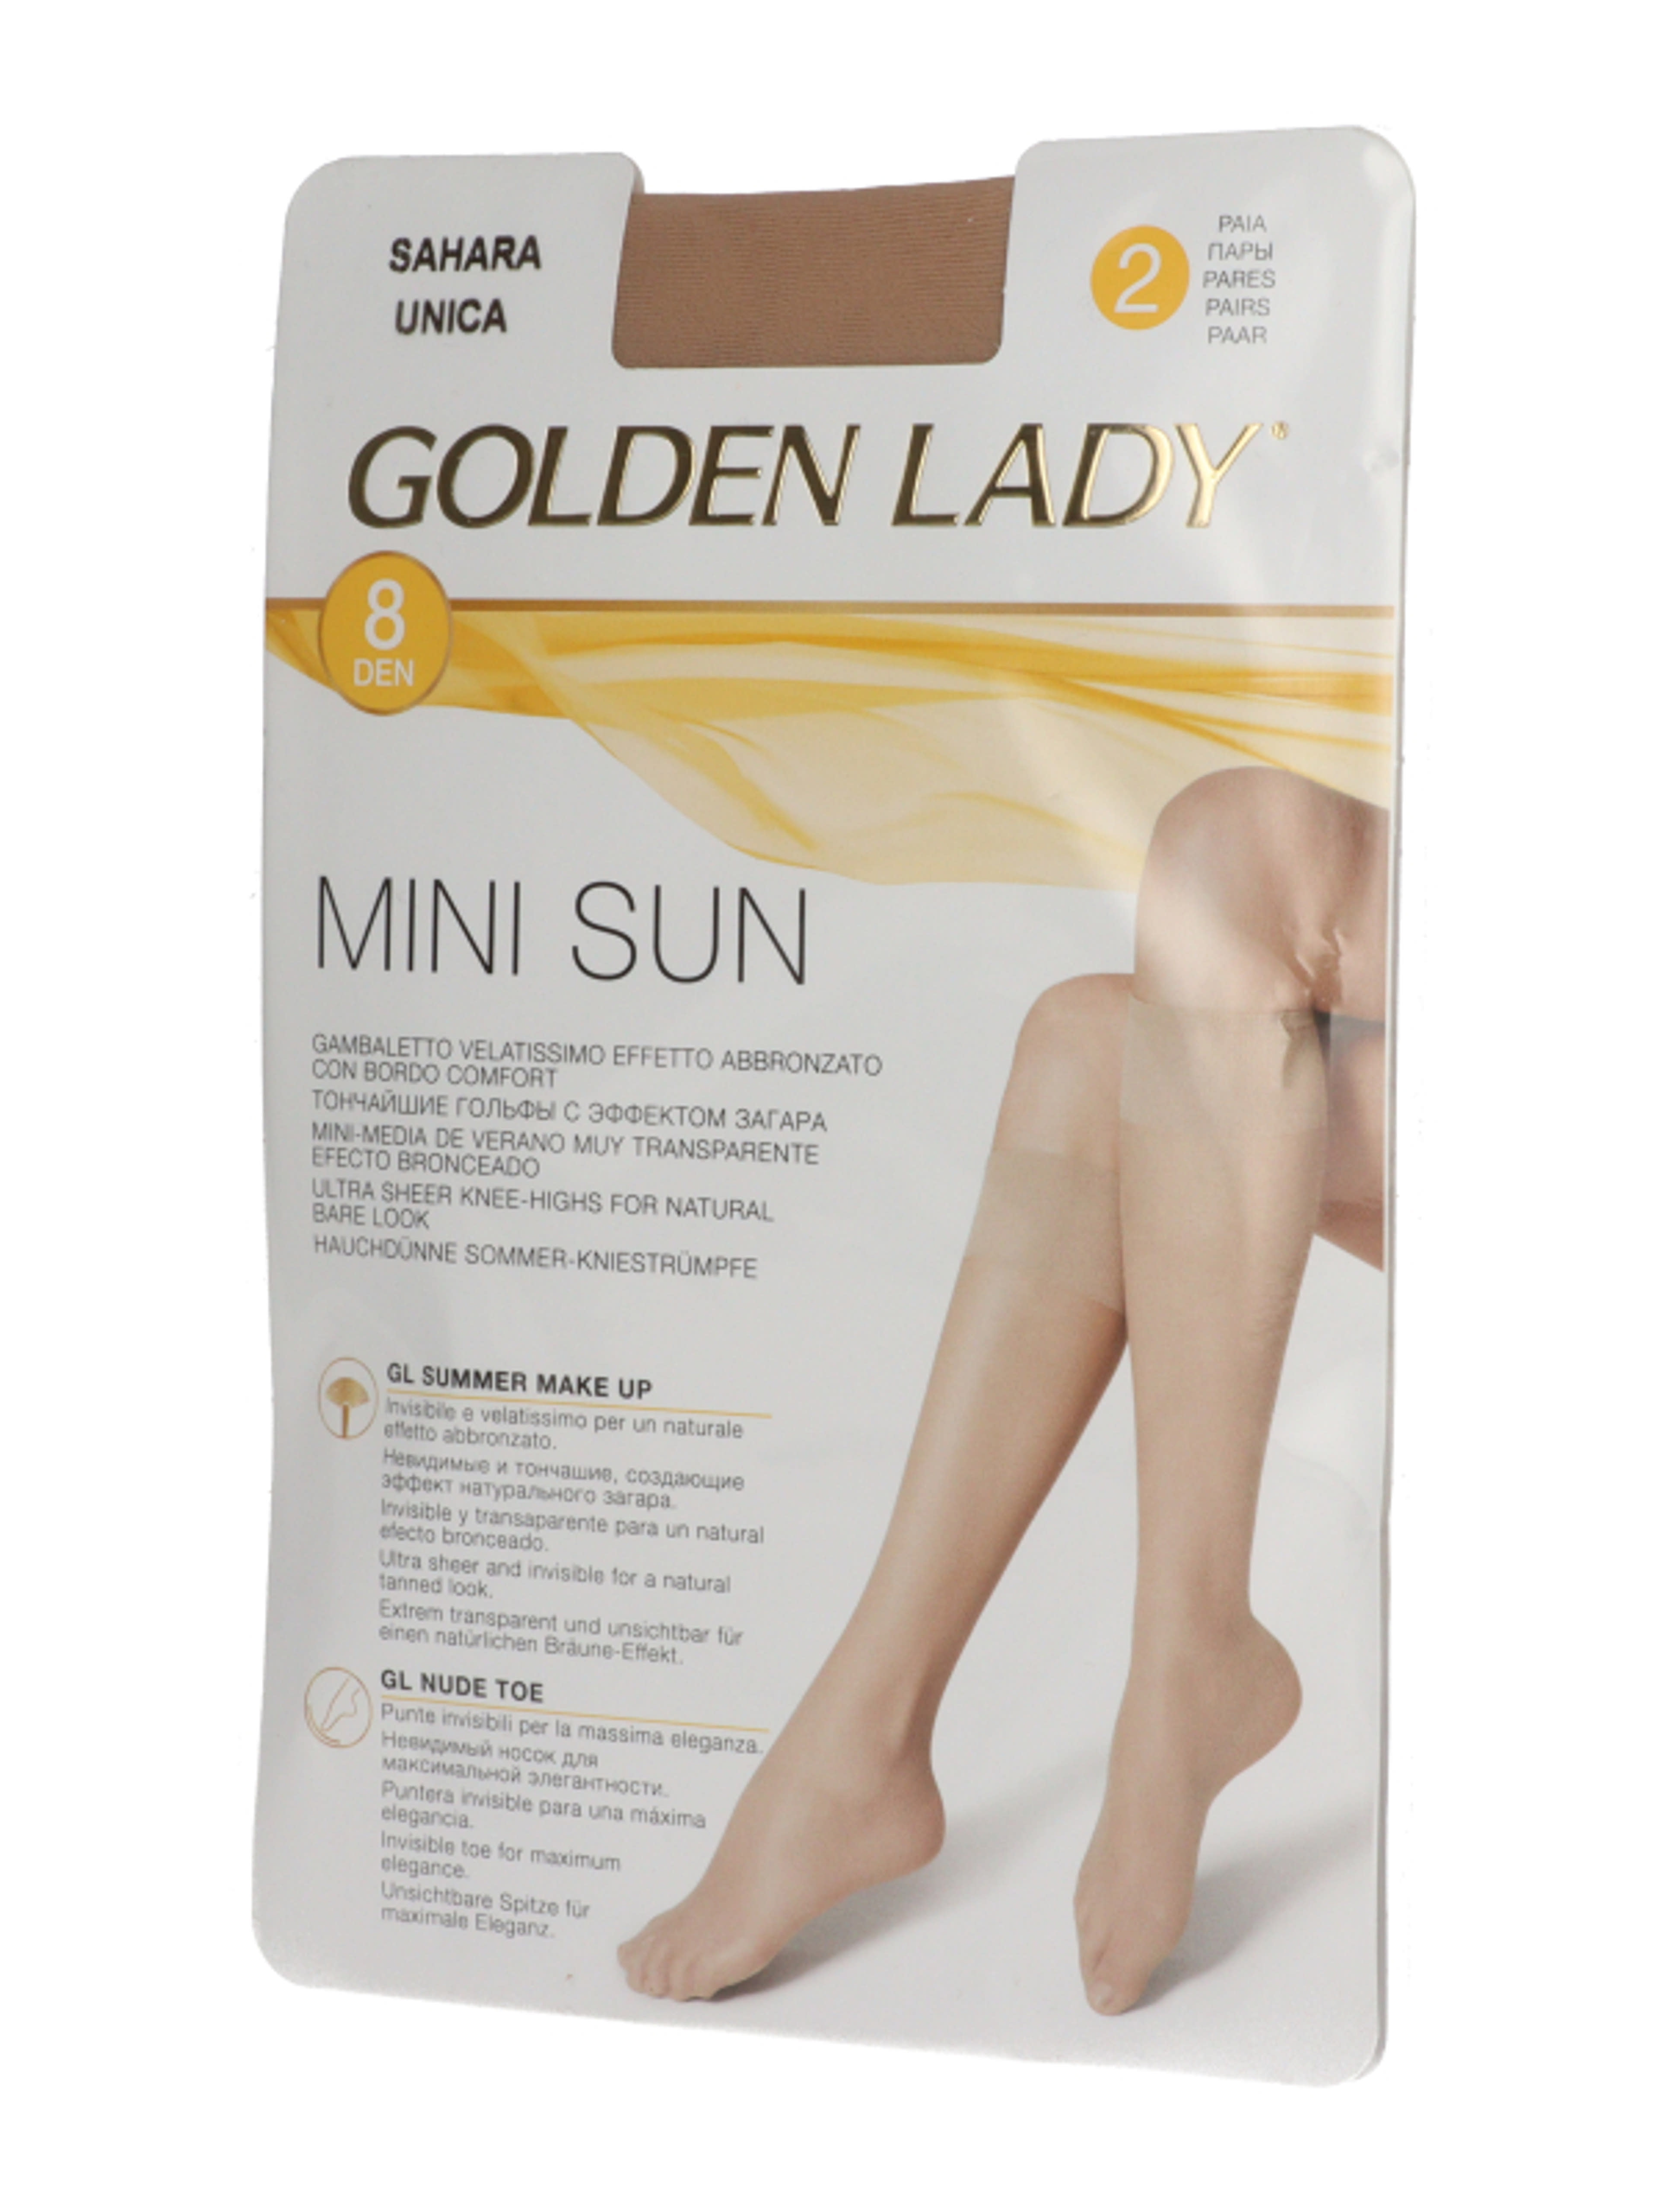 Golden Lady Mini Sun térdfix 8 Den Sahara - 2 db-2